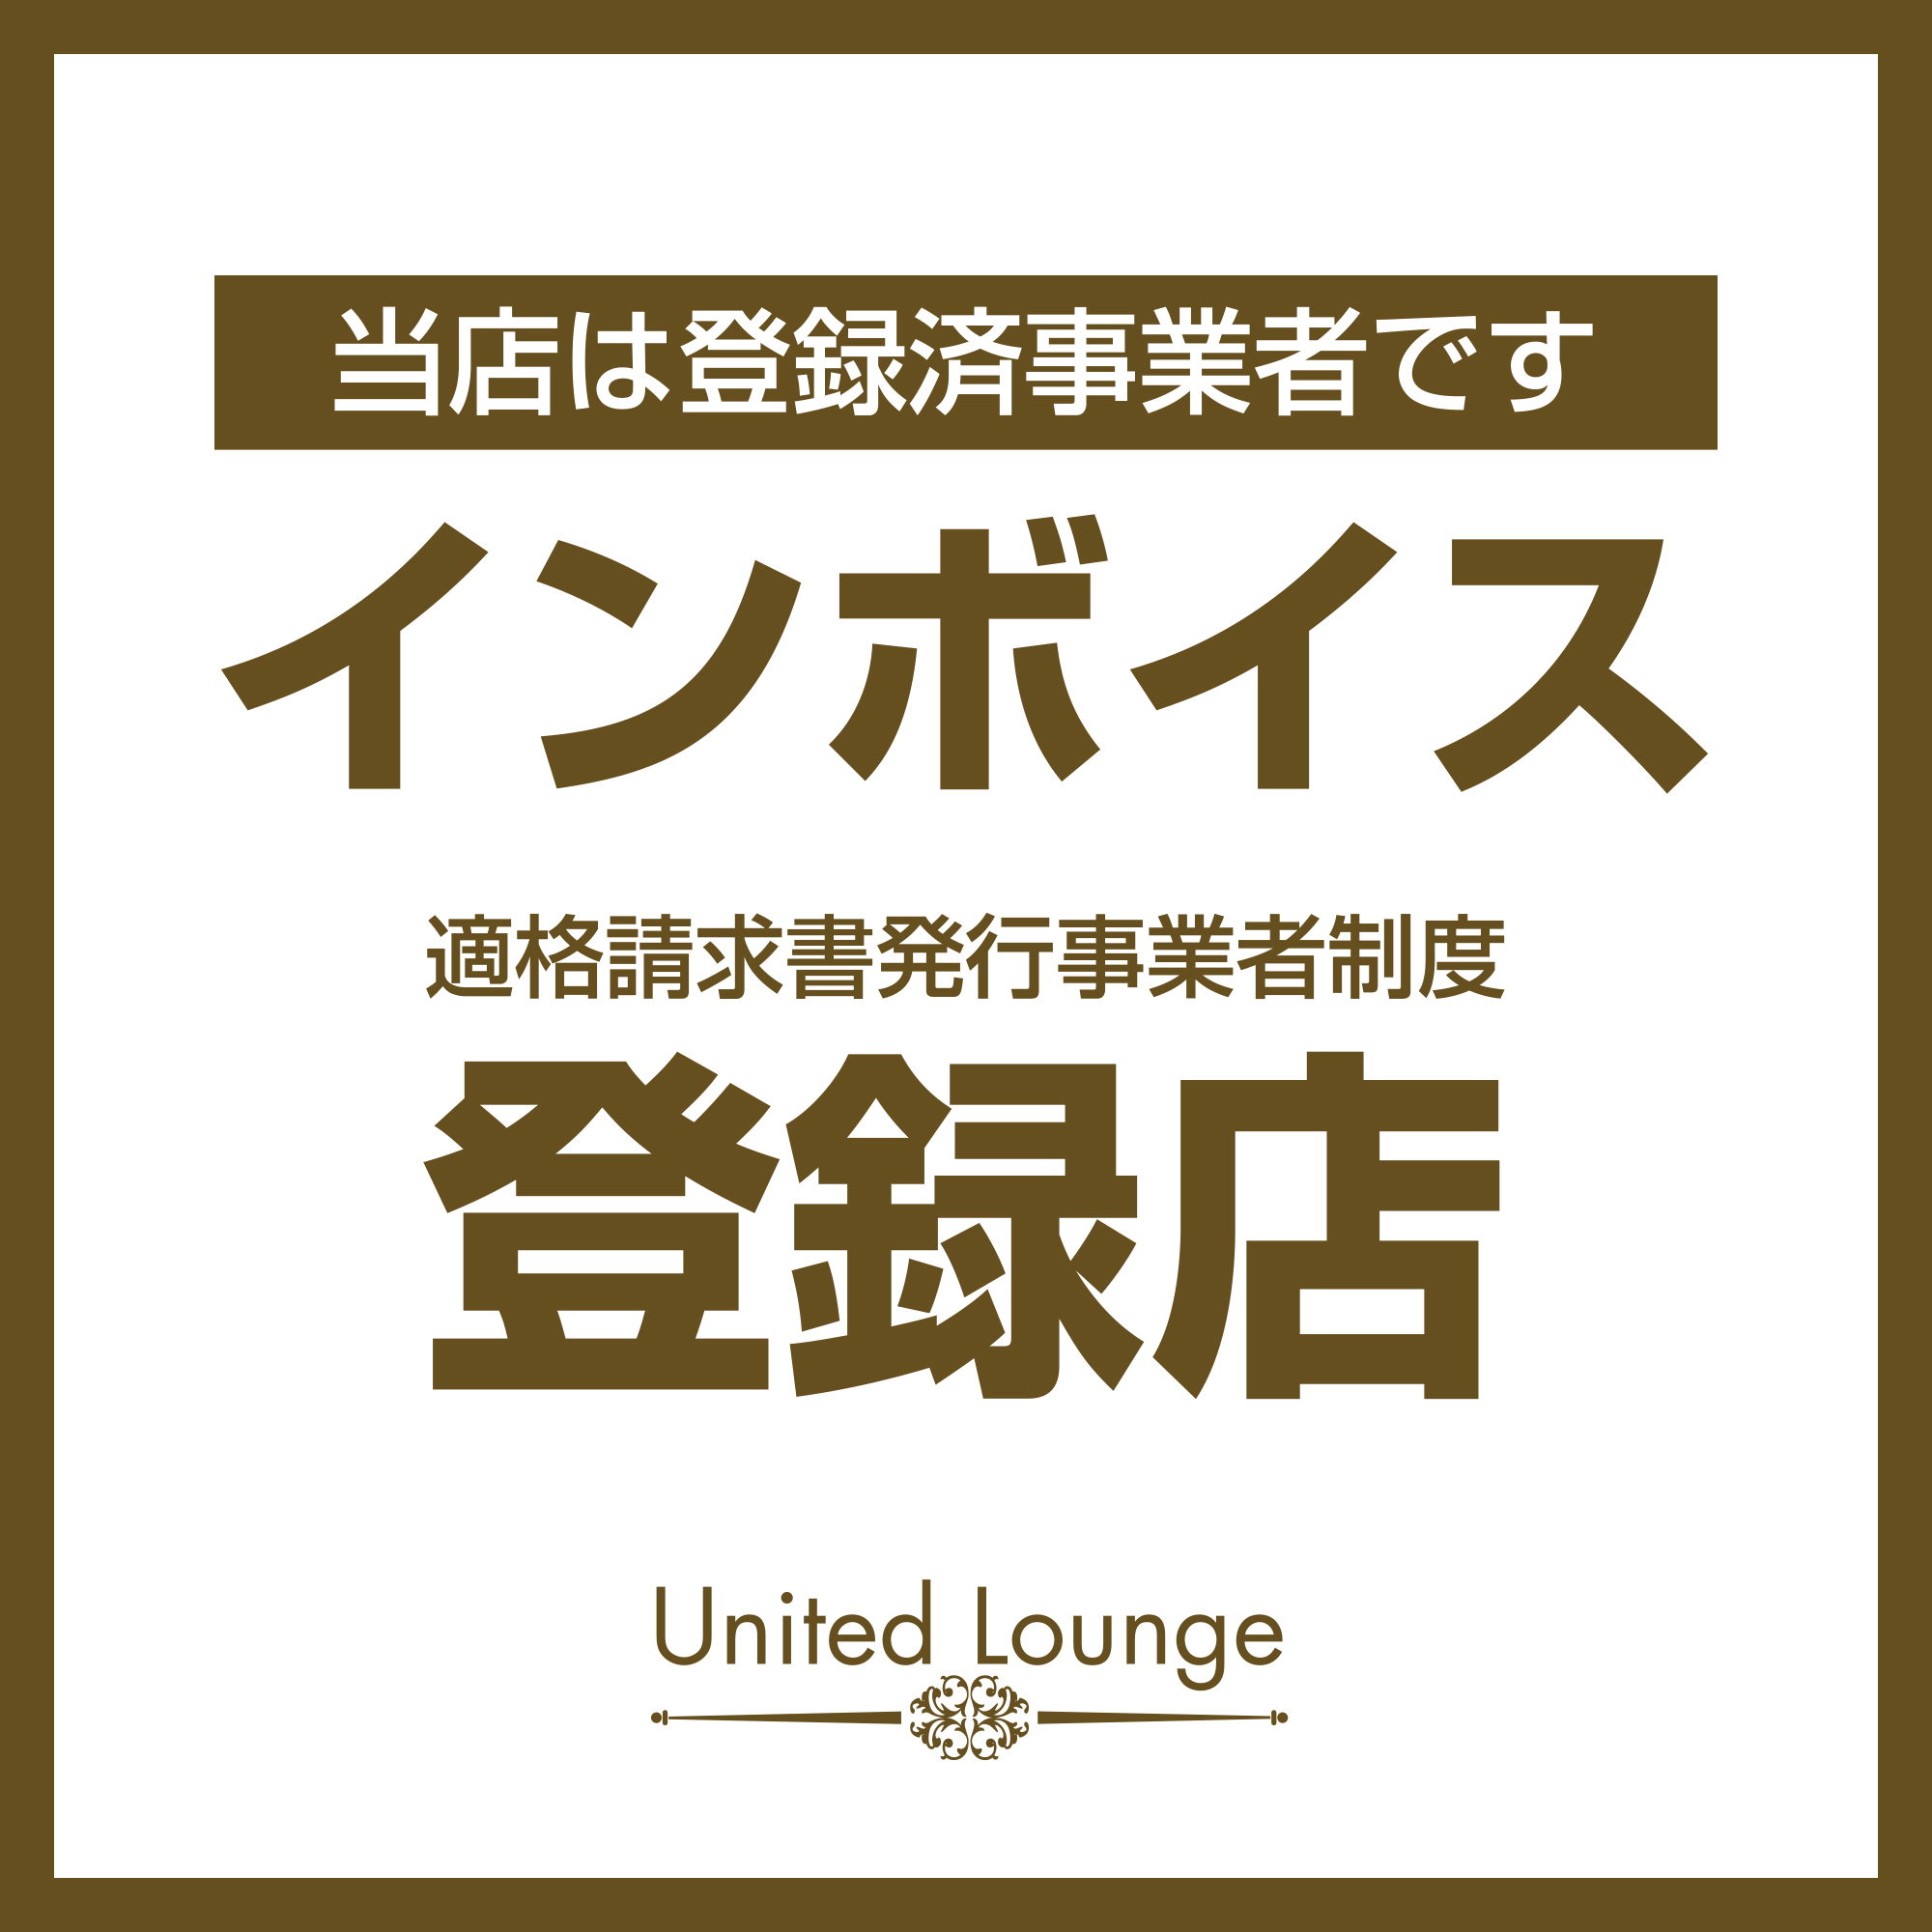 館林 キャバクラ「United Lounge」